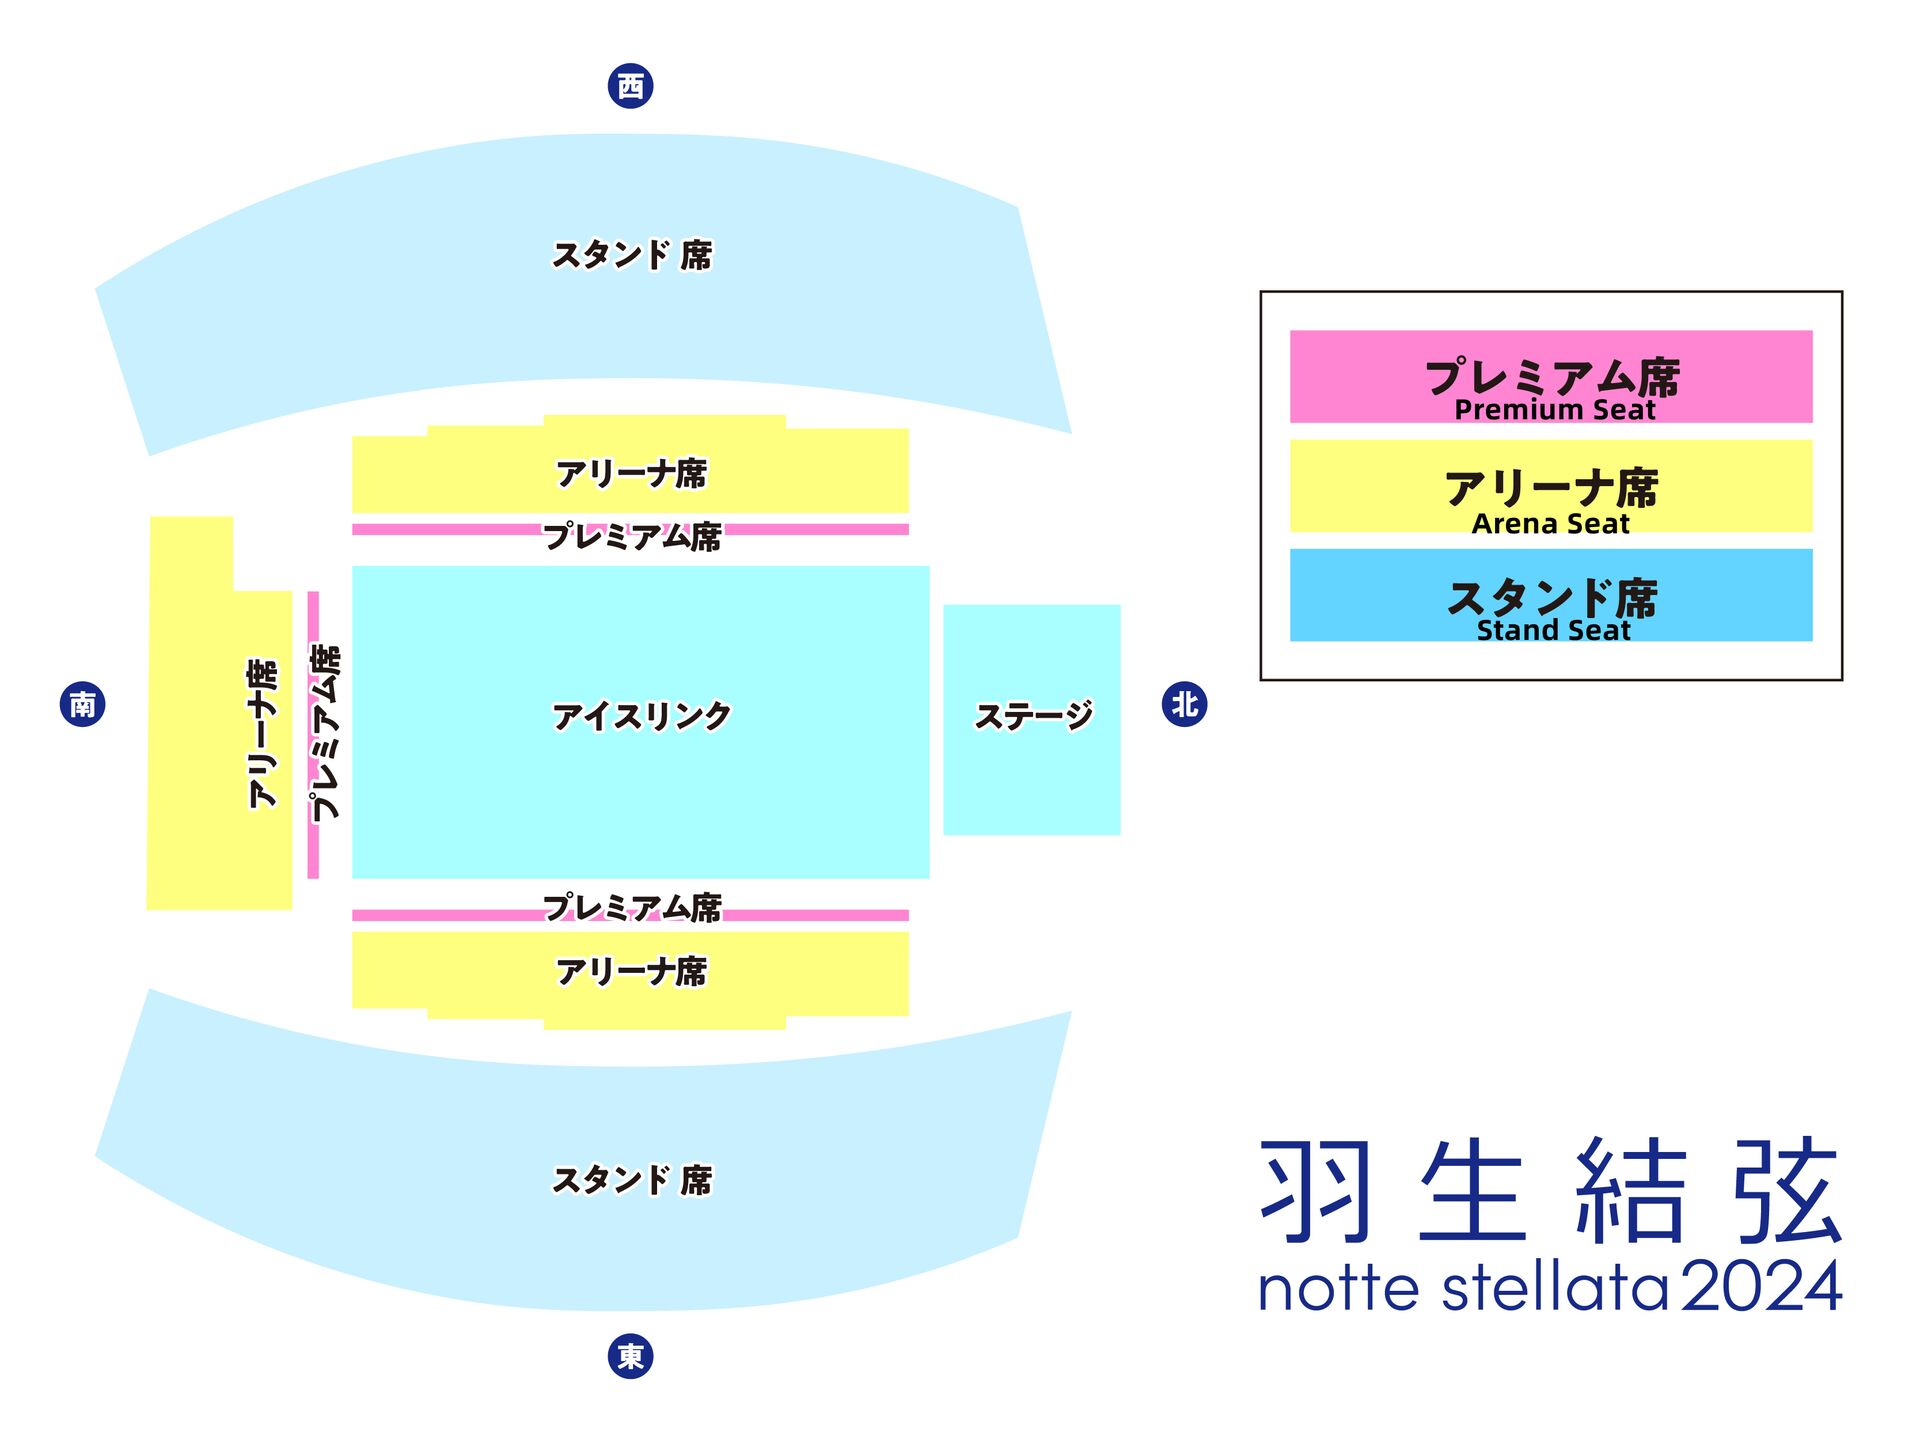 Yuzuru Hanyu notte stellata 2024 Verified Tickets | eplus - Japan 